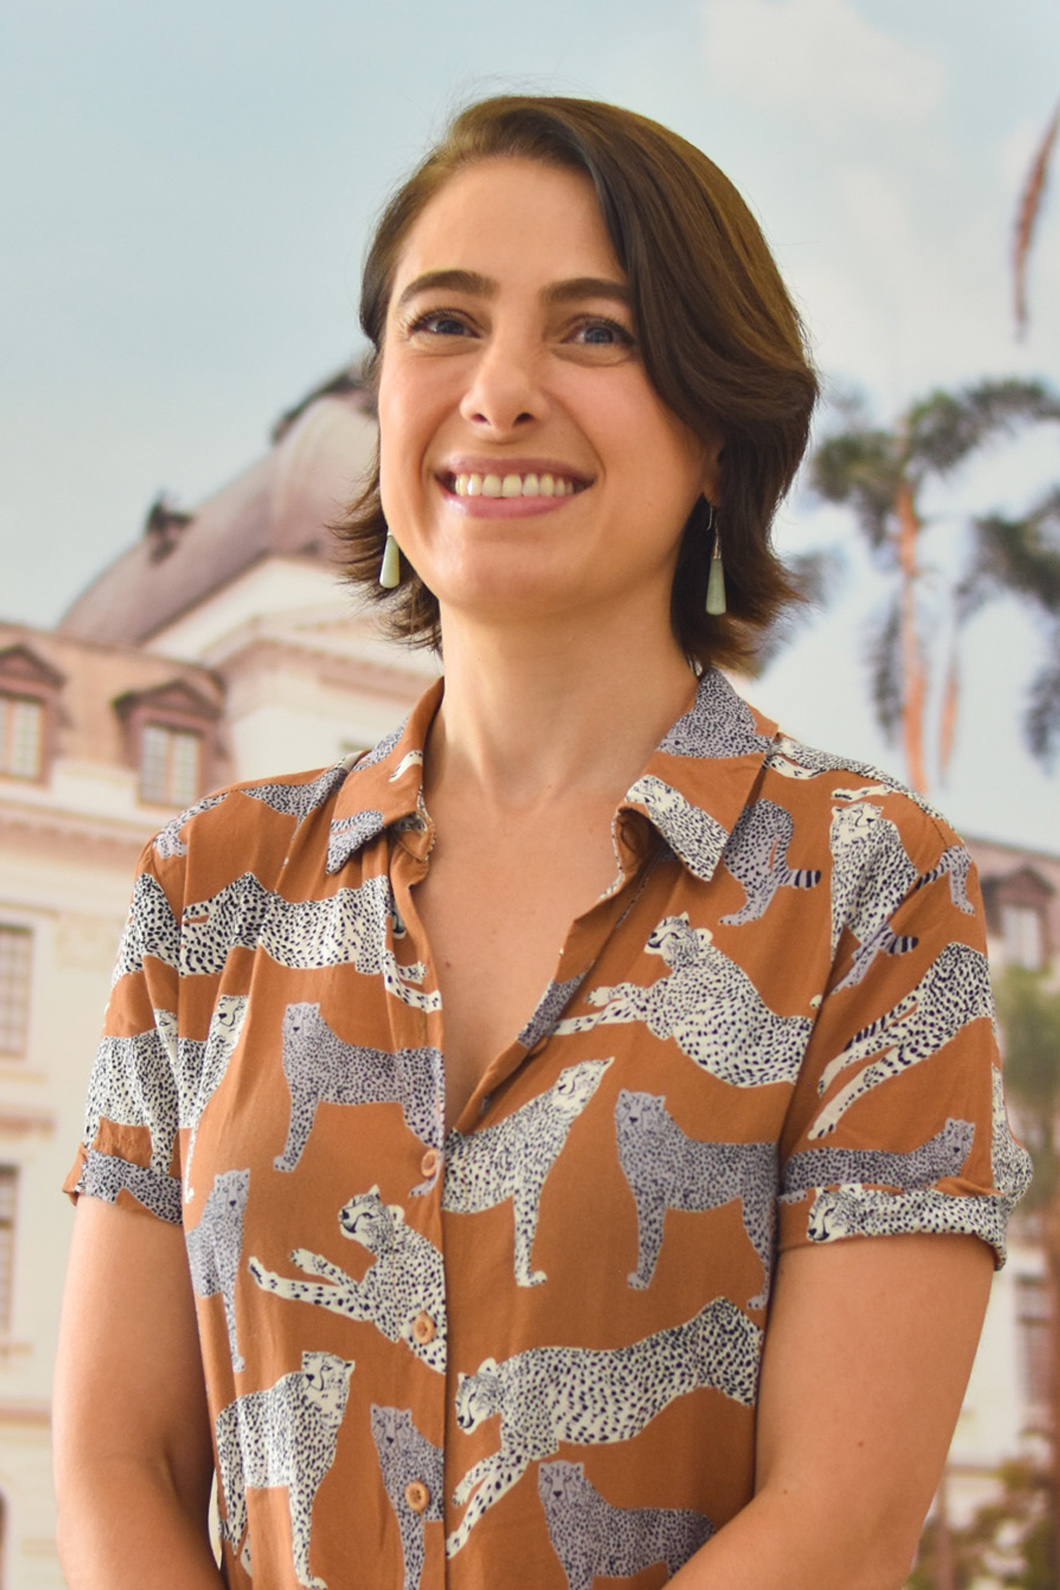 Foto de Verónica Uribe, jefe de Mantenimiento. Se encuentra de frente sonriendo.